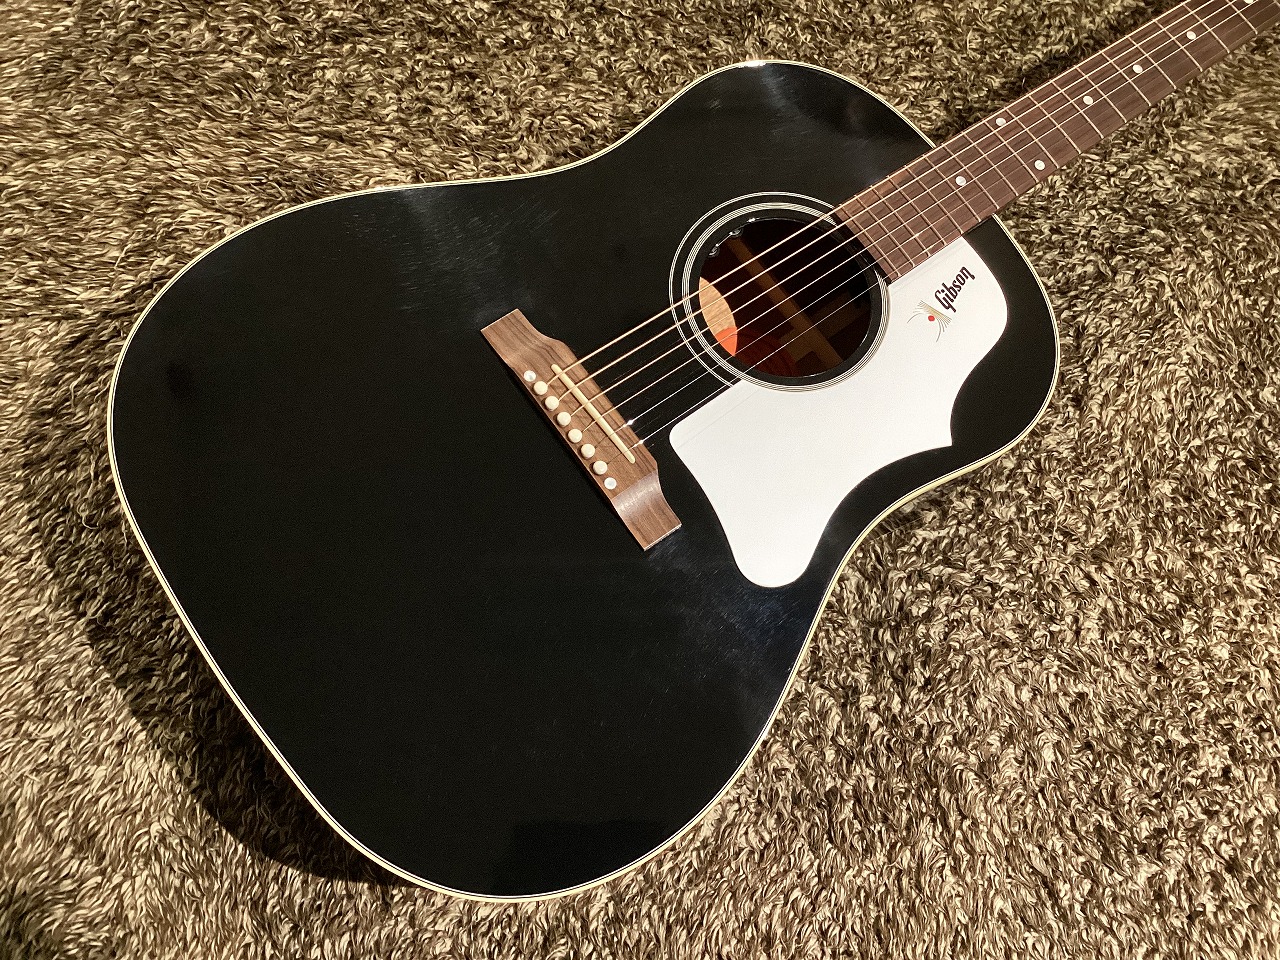 秦基博さんのメインギターに限りなく近づけたJ-45(1965年製) Gibson